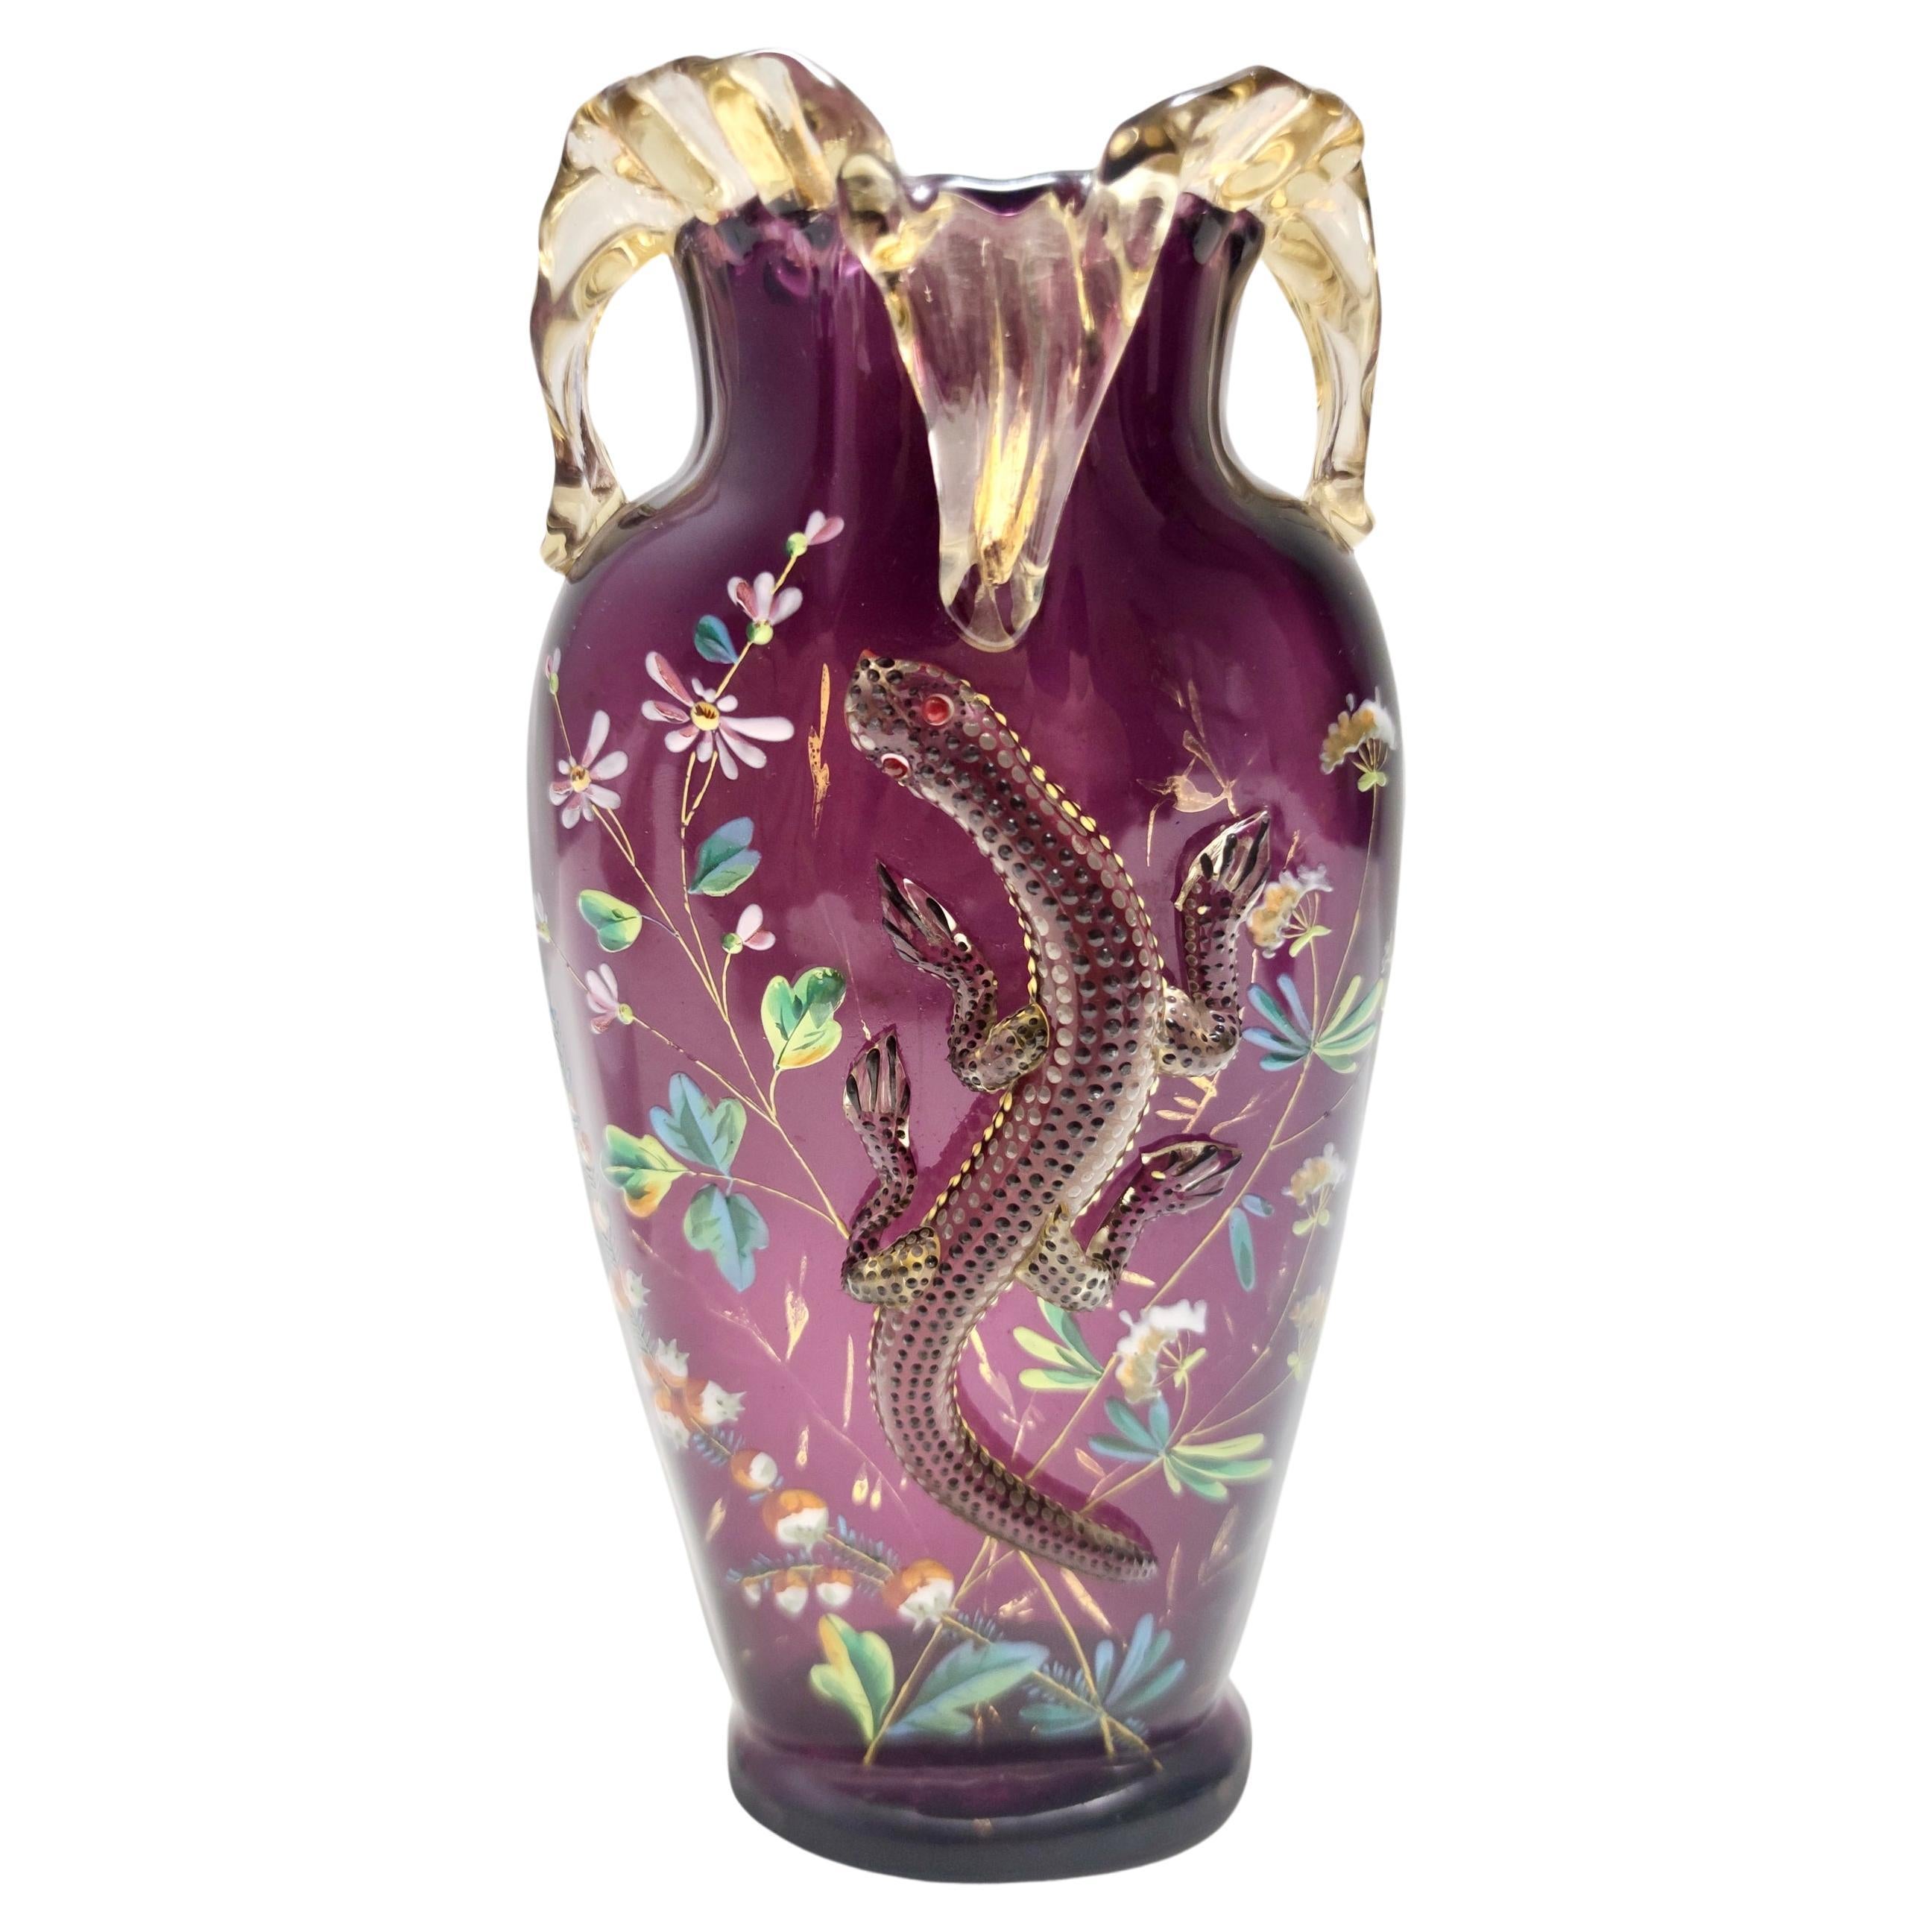 Atemberaubende böhmische Vintage-Vase aus mundgeblasenem Amethystglas mit Salamander